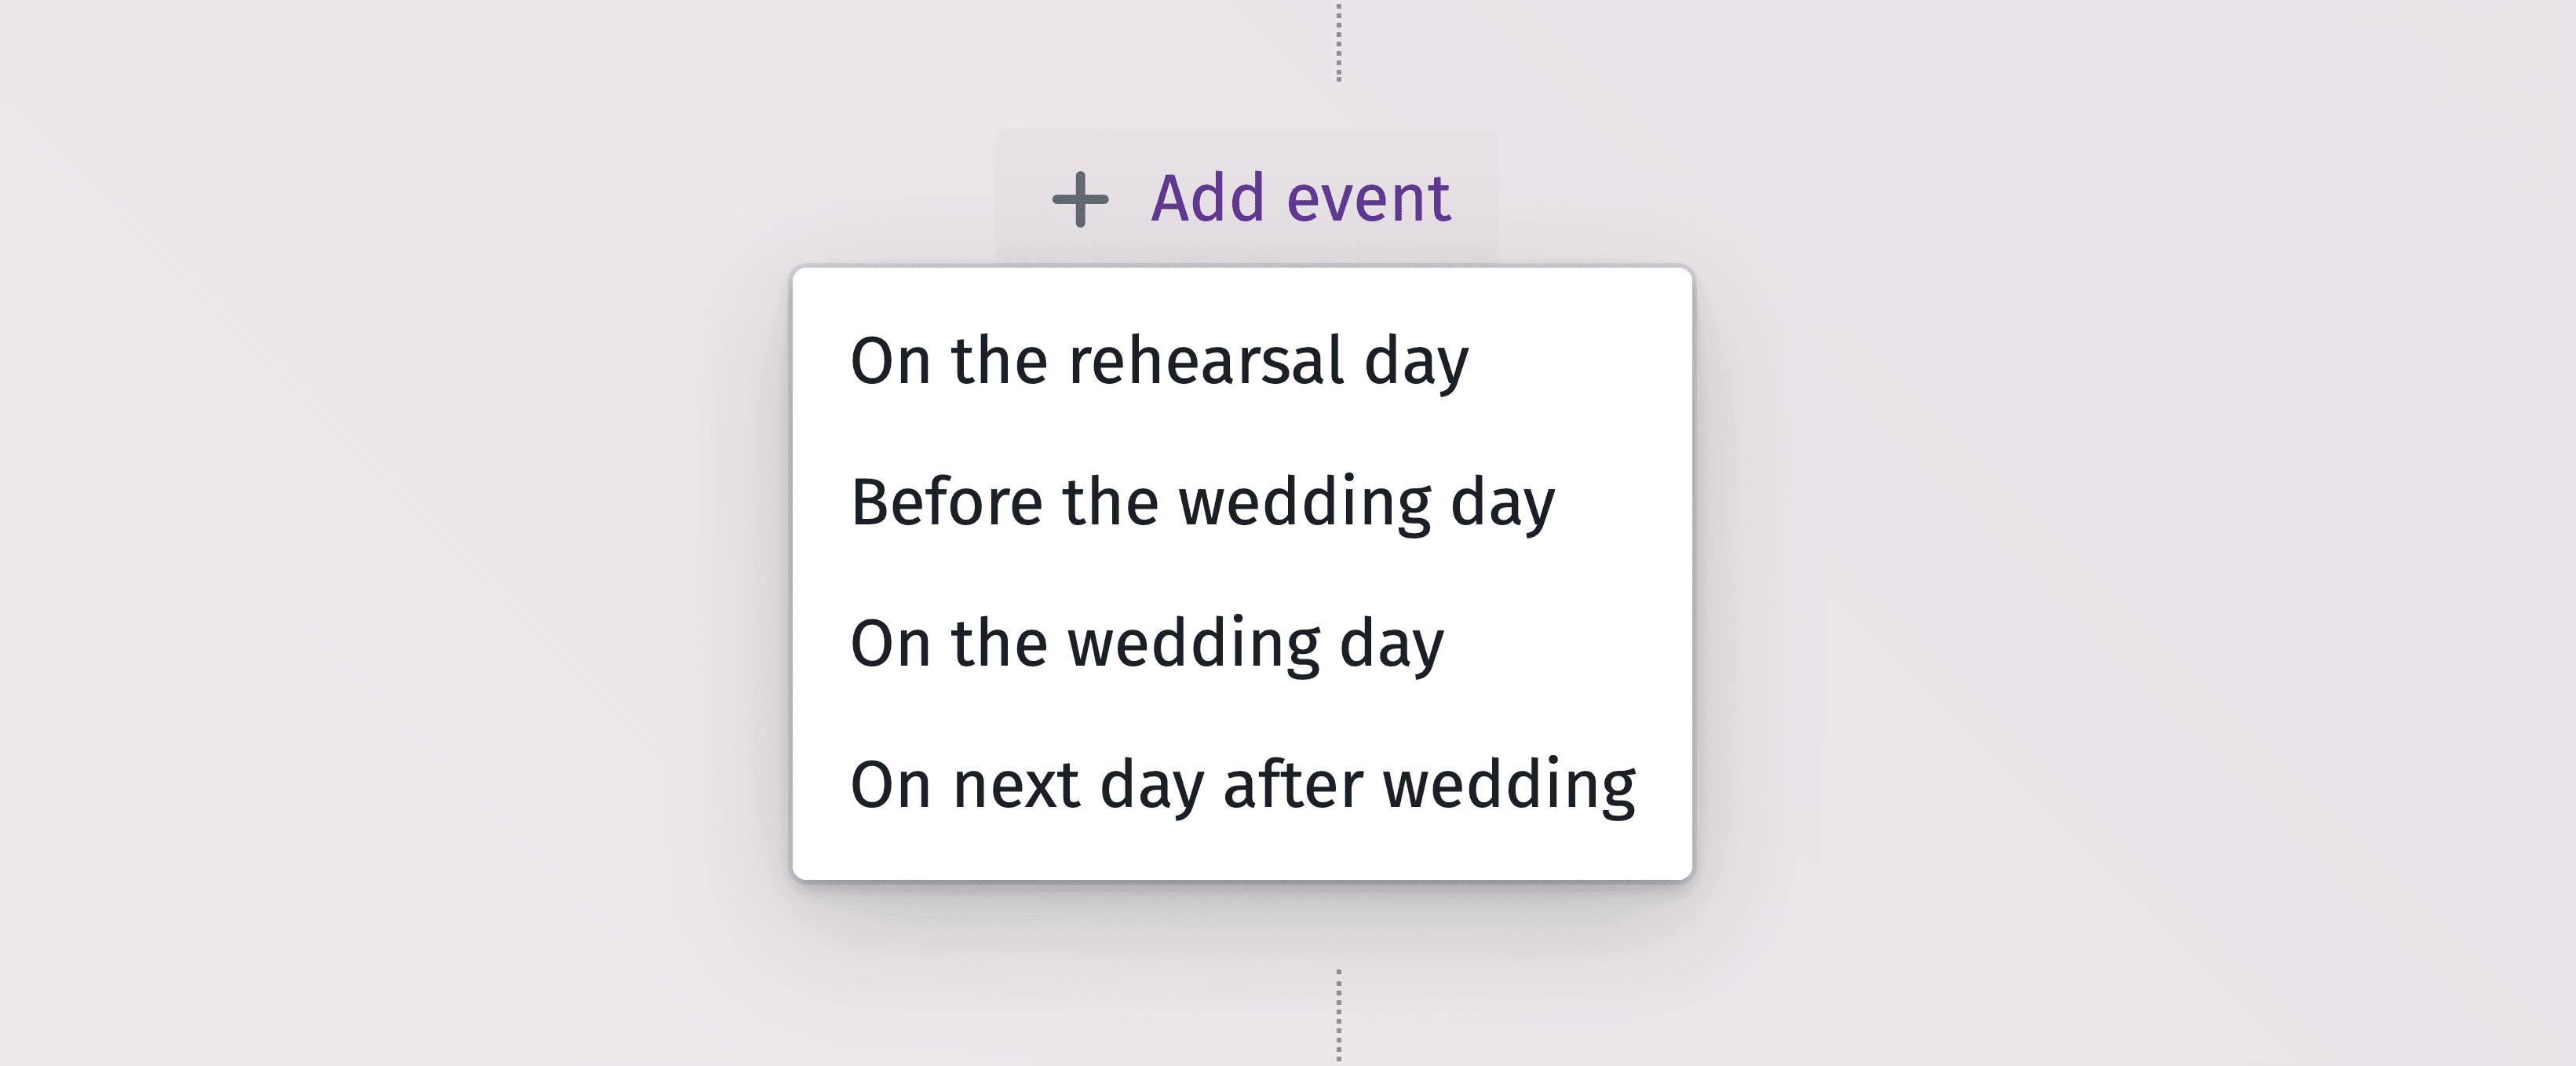 Graficul detaliat al cronologiei pentru planificarea eficientă a fiecărui moment din ziua nunții dvs.